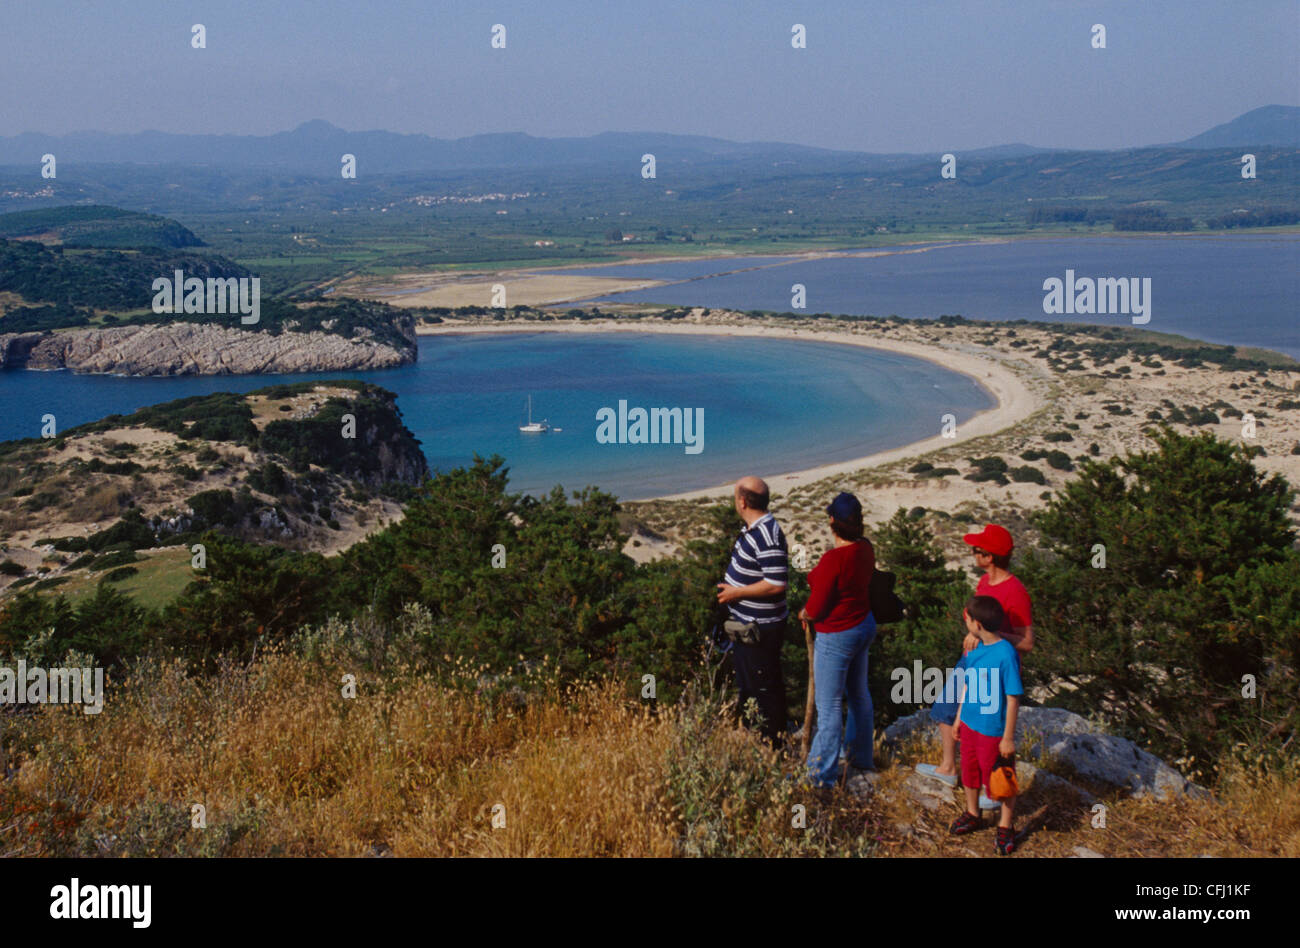 View of Voidokilia Bay near Pylos Stock Photo